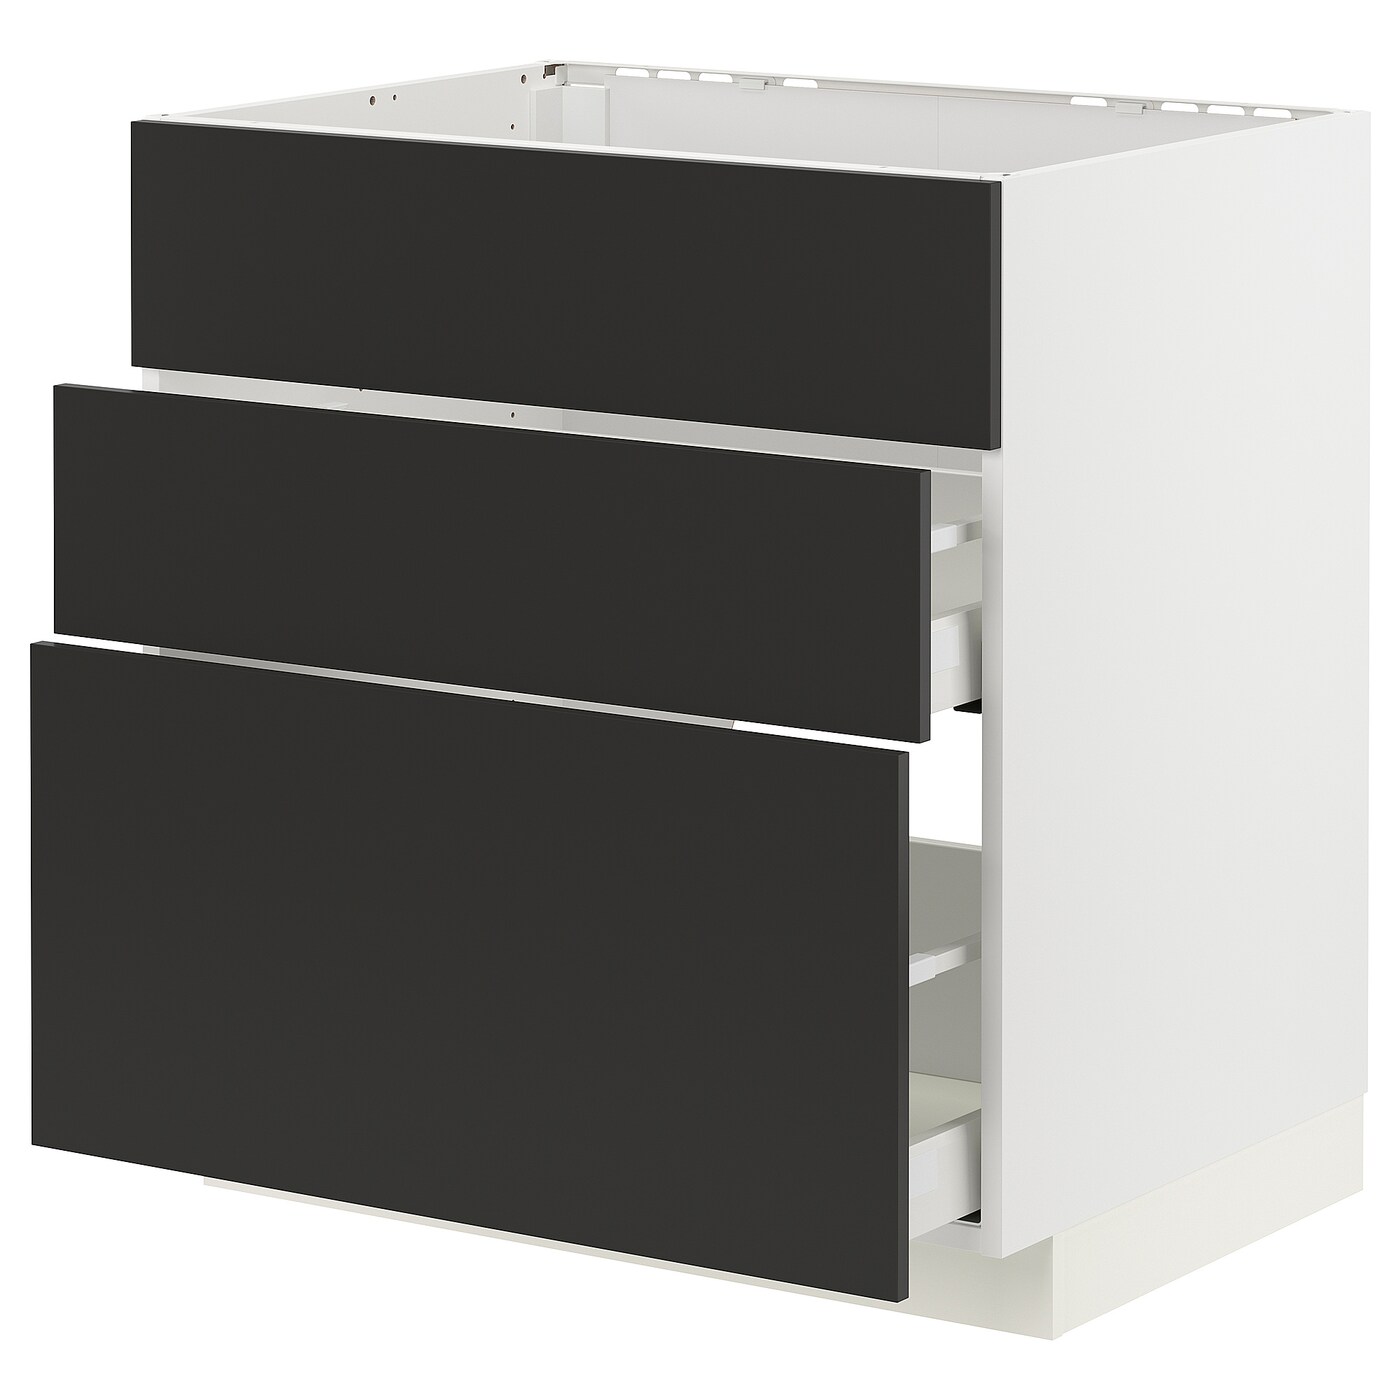 Напольный шкаф - METOD / MAXIMERA IKEA/ МЕТОД/ МАКСИМЕРА ИКЕА,  80х80 см, белый/черный